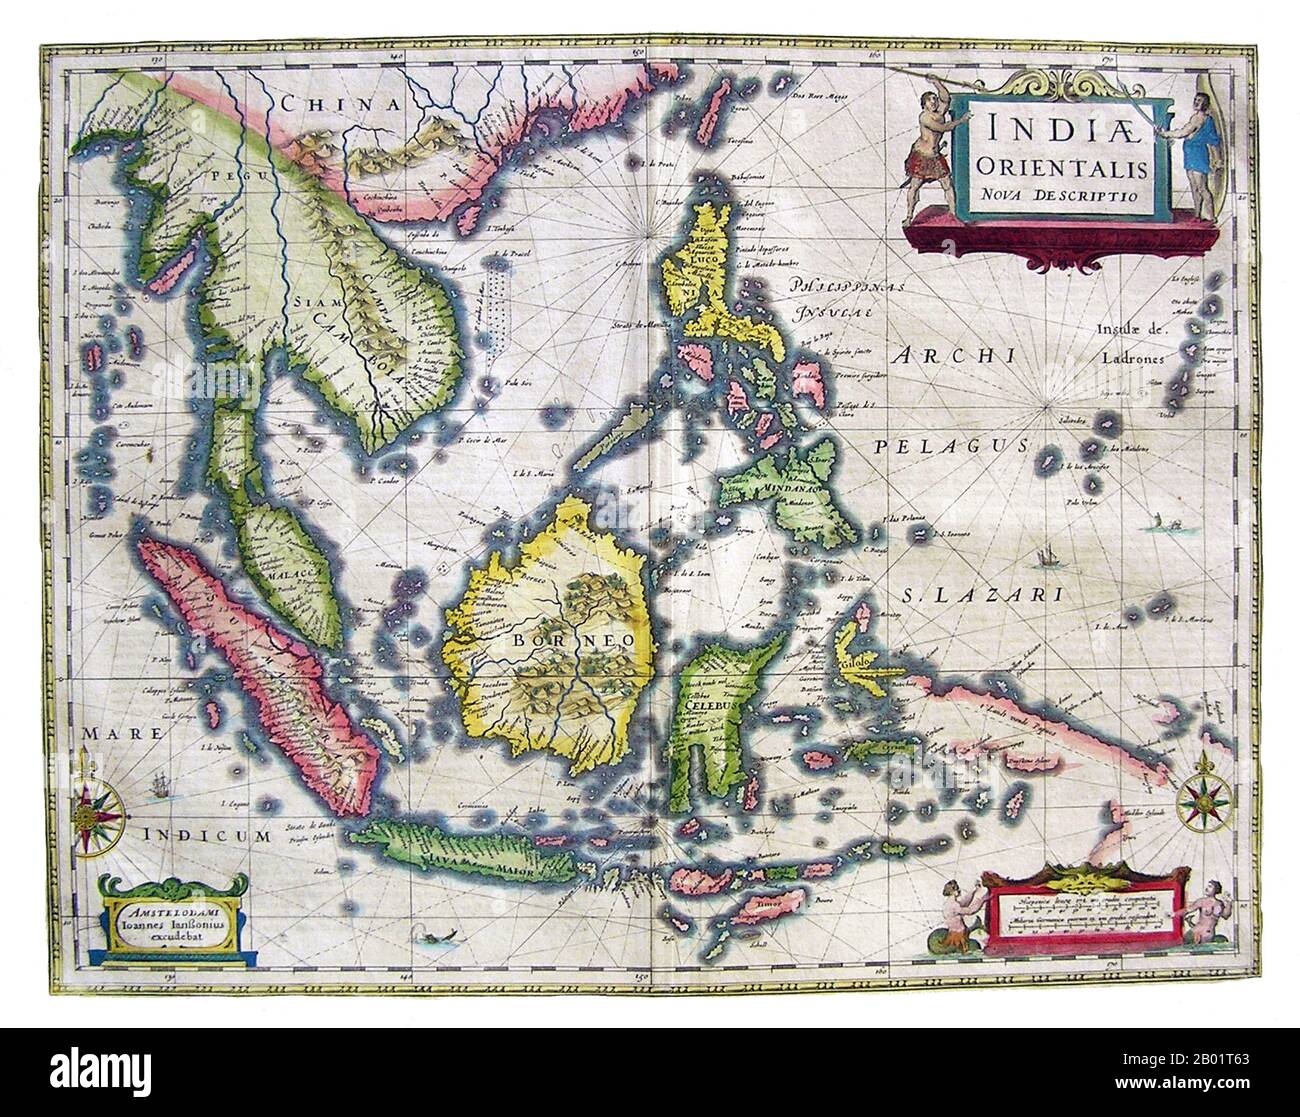 Asie : Inde orientalis Nova Descriptio. Carte du cartographe néerlandais Jan Jansson (1588-1664), 1636. Une première carte de l'Asie du Sud-est montrant l'étendue et les limites de la connaissance européenne de la région. Alors que les grandes îles de l'Indonésie sont cartographiées avec une certaine précision, la côte sud de Java et les petits Sundas ne sont cartographiés qu'en grandes lignes, et la Nouvelle-Guinée est particulièrement incomplète. Dans toutes les régions, nous voyons des caractéristiques côtières et des colonies, mais il y a peu de détails intérieurs. Les Philippines sont bien décrites, et les îles Mariannes (Ladrones) ont une taille et une importance indues. Banque D'Images